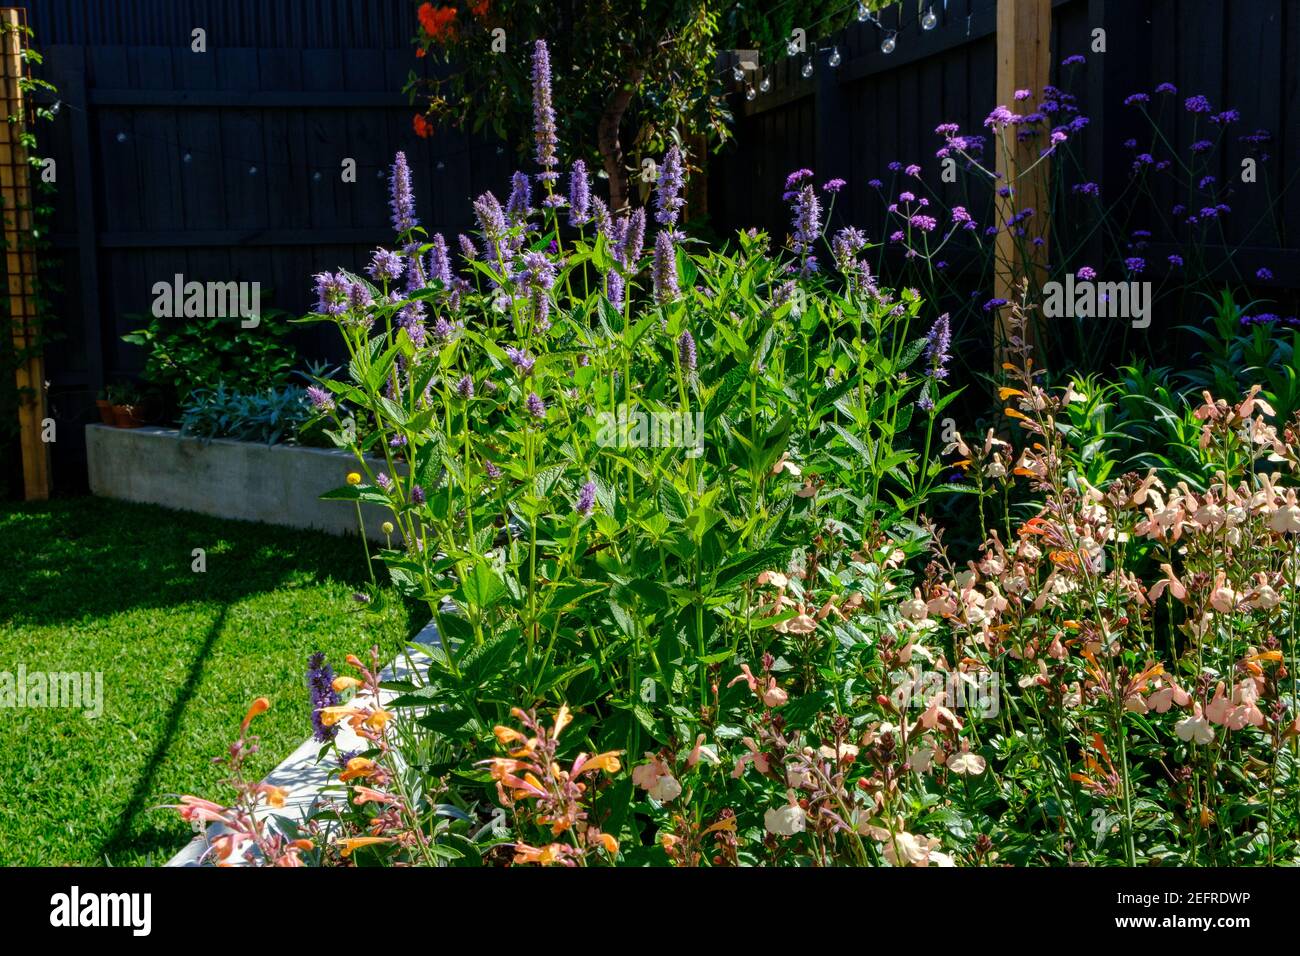 A contemporary backyard garden in Melbourne, Australia Stock Photo